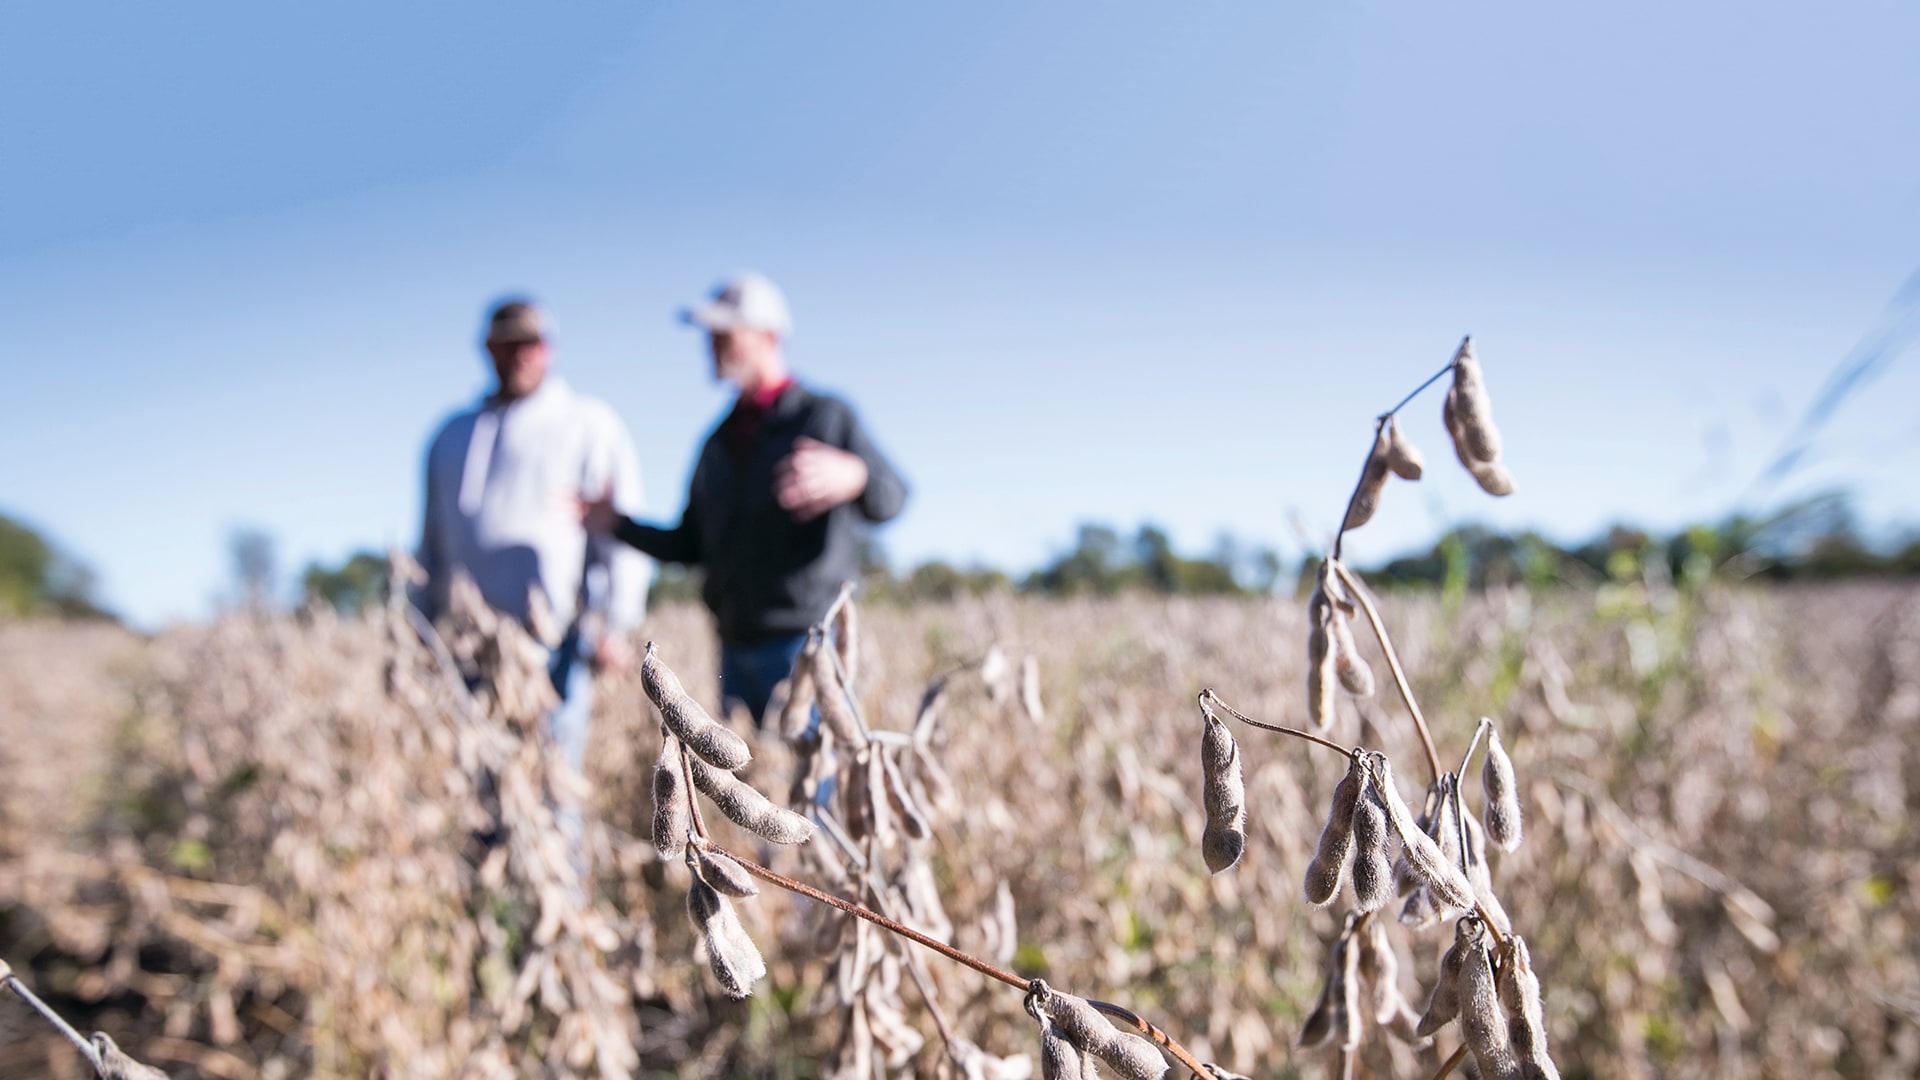 Two men standing in a soybean field